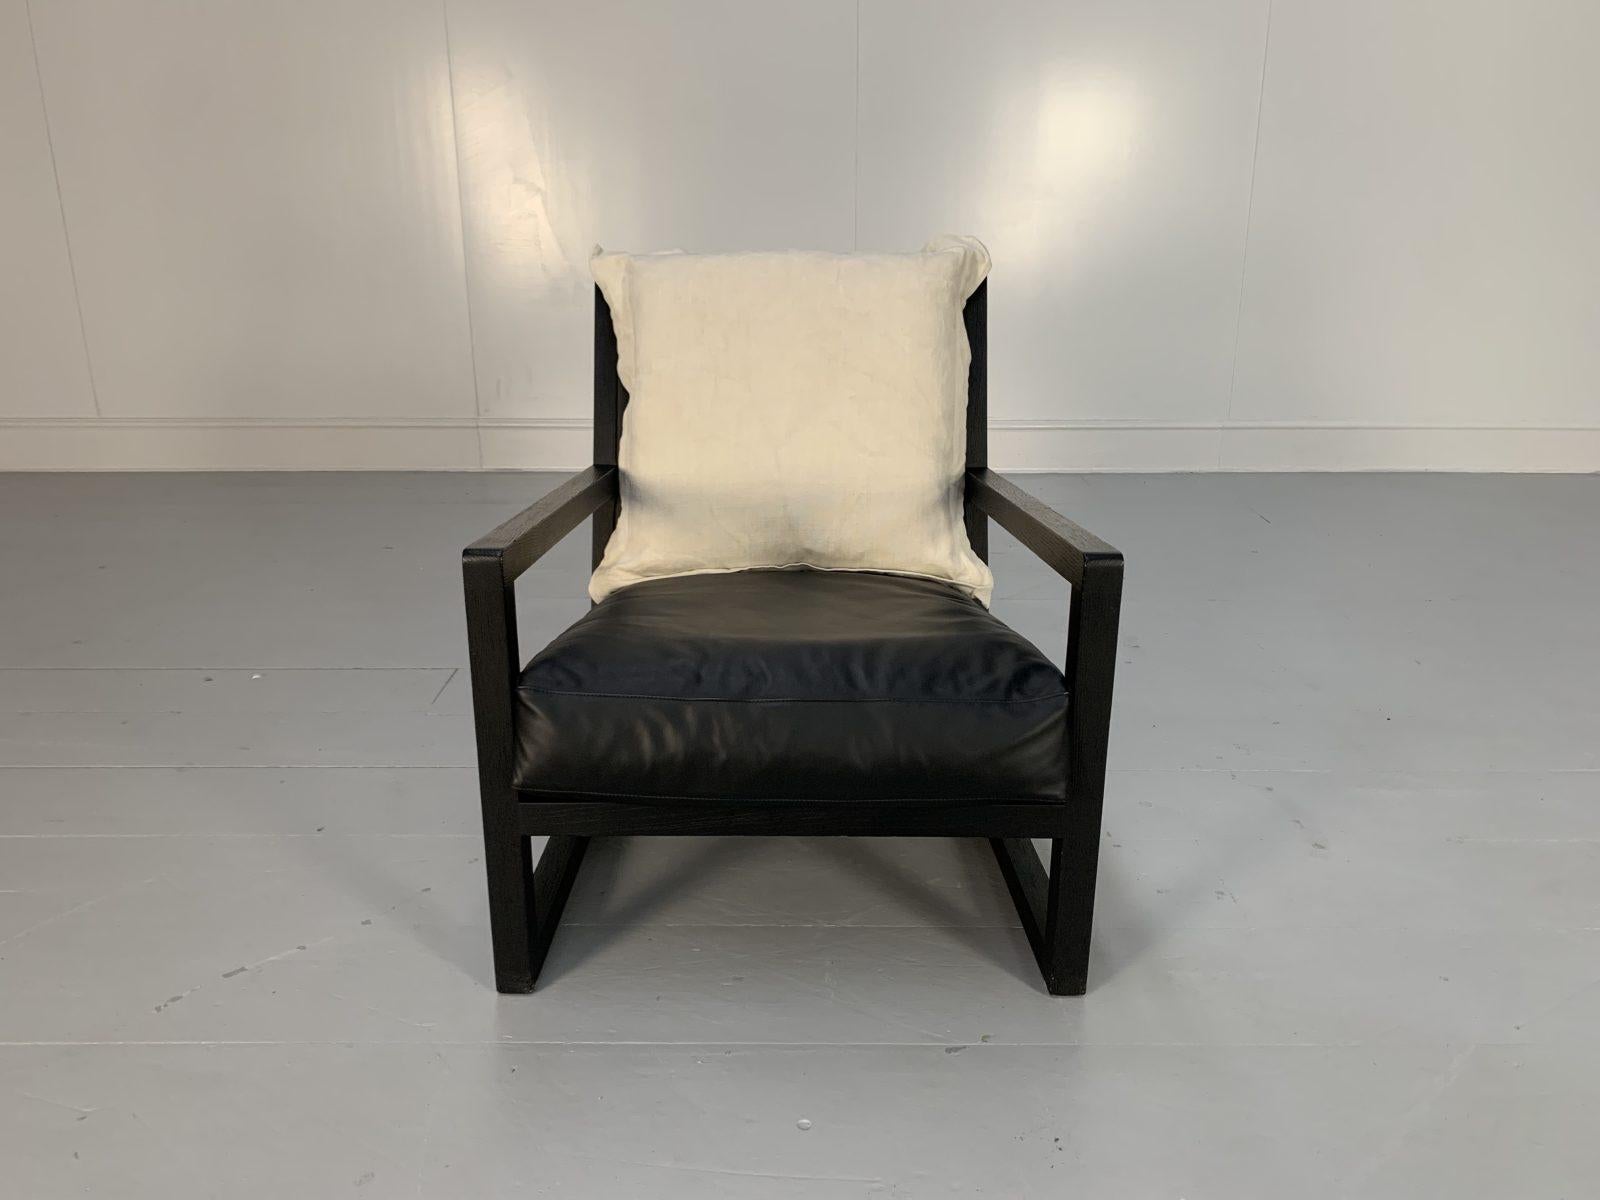 B&B Italia “Maxalto Clio” Armchairs, in Black Leather & Linen X4 For Sale 4